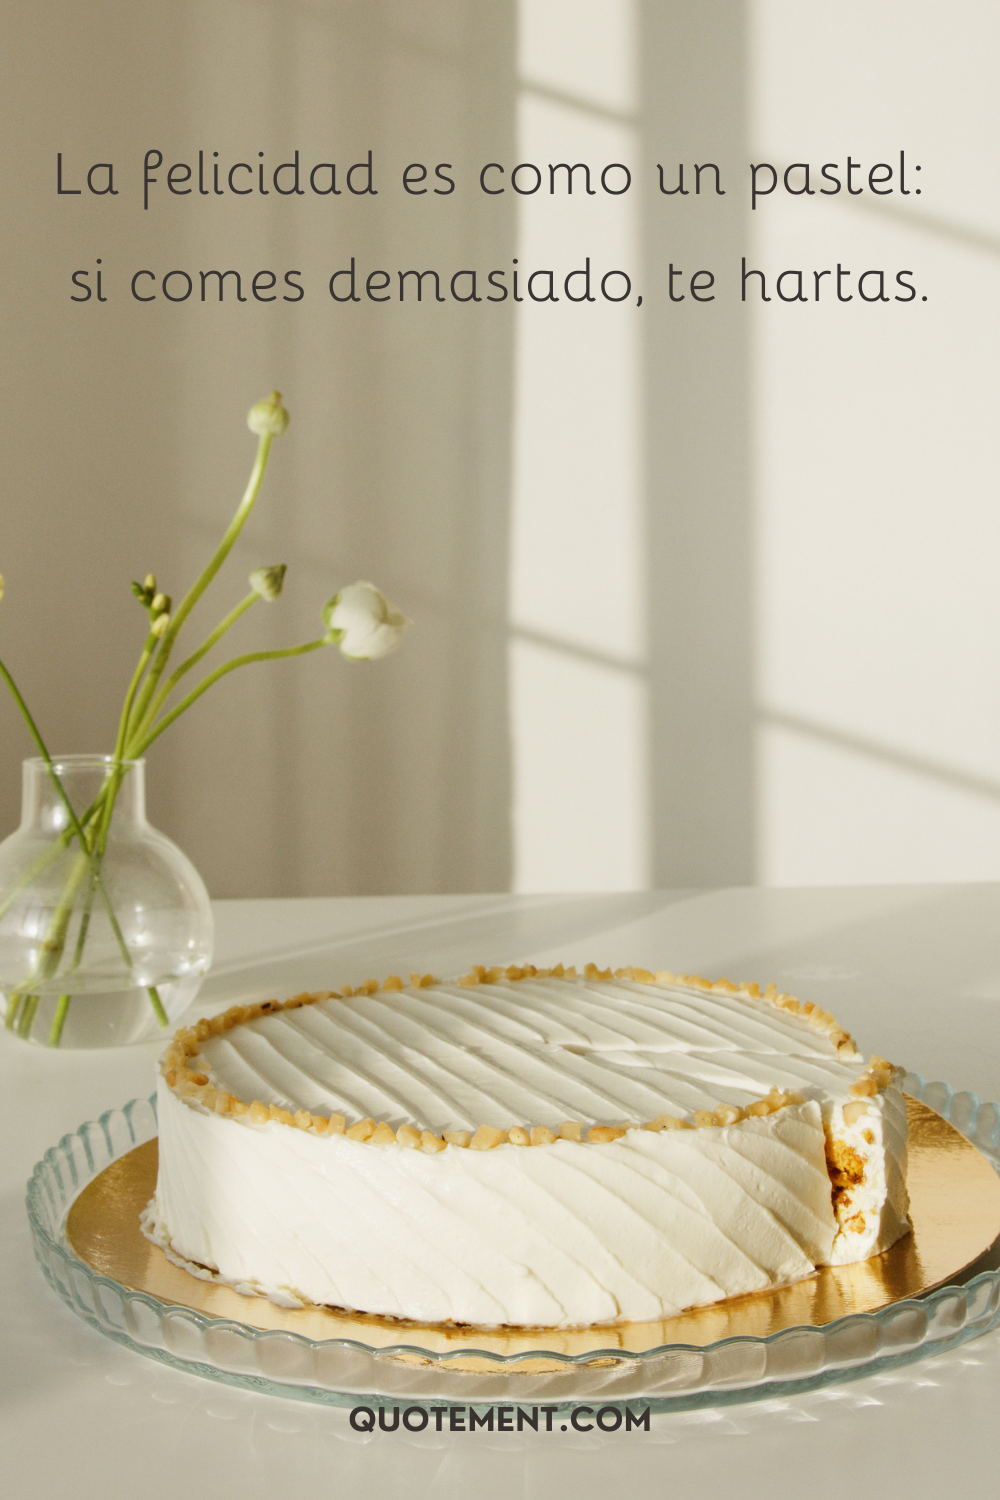 La felicidad es como un pastel